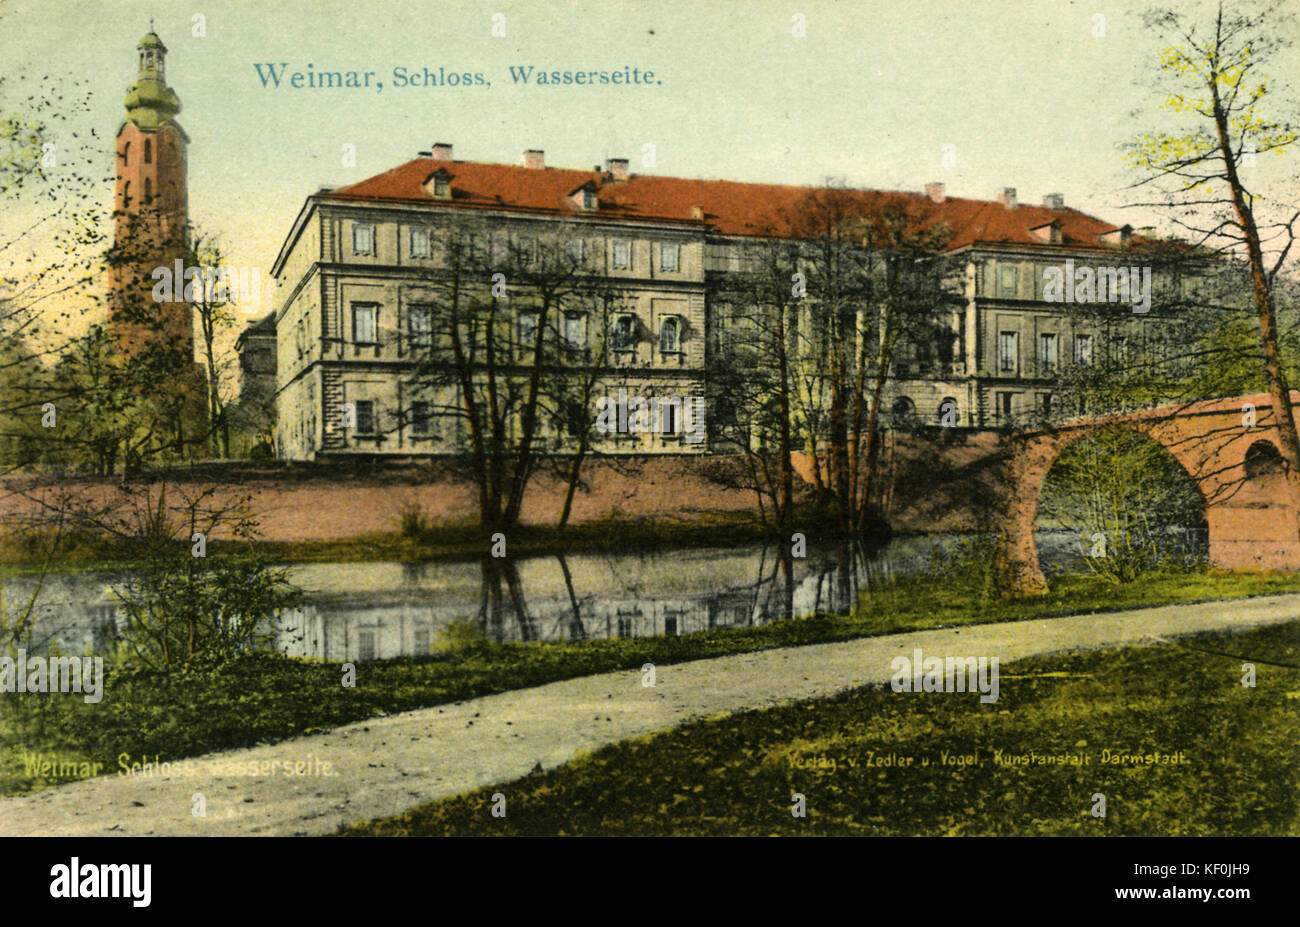 Weimar, Deutschland: Schloss, Wasserseite (Palast und Riverside) Postkarte. Stockfoto